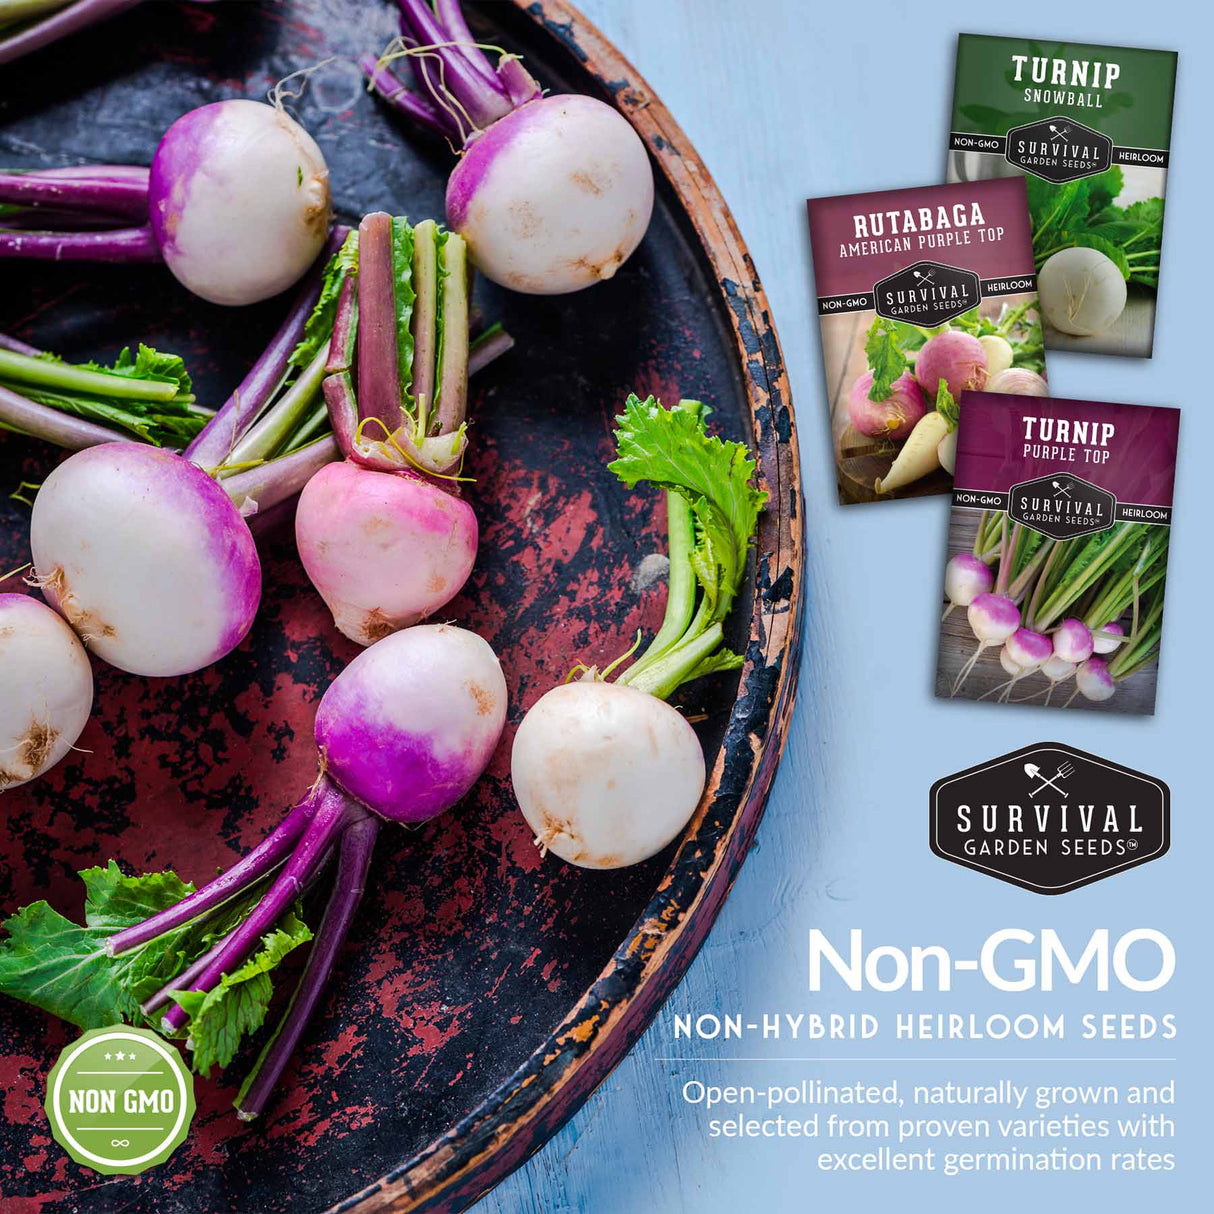 Non-GMO non-hybrid heirloom garden seeds